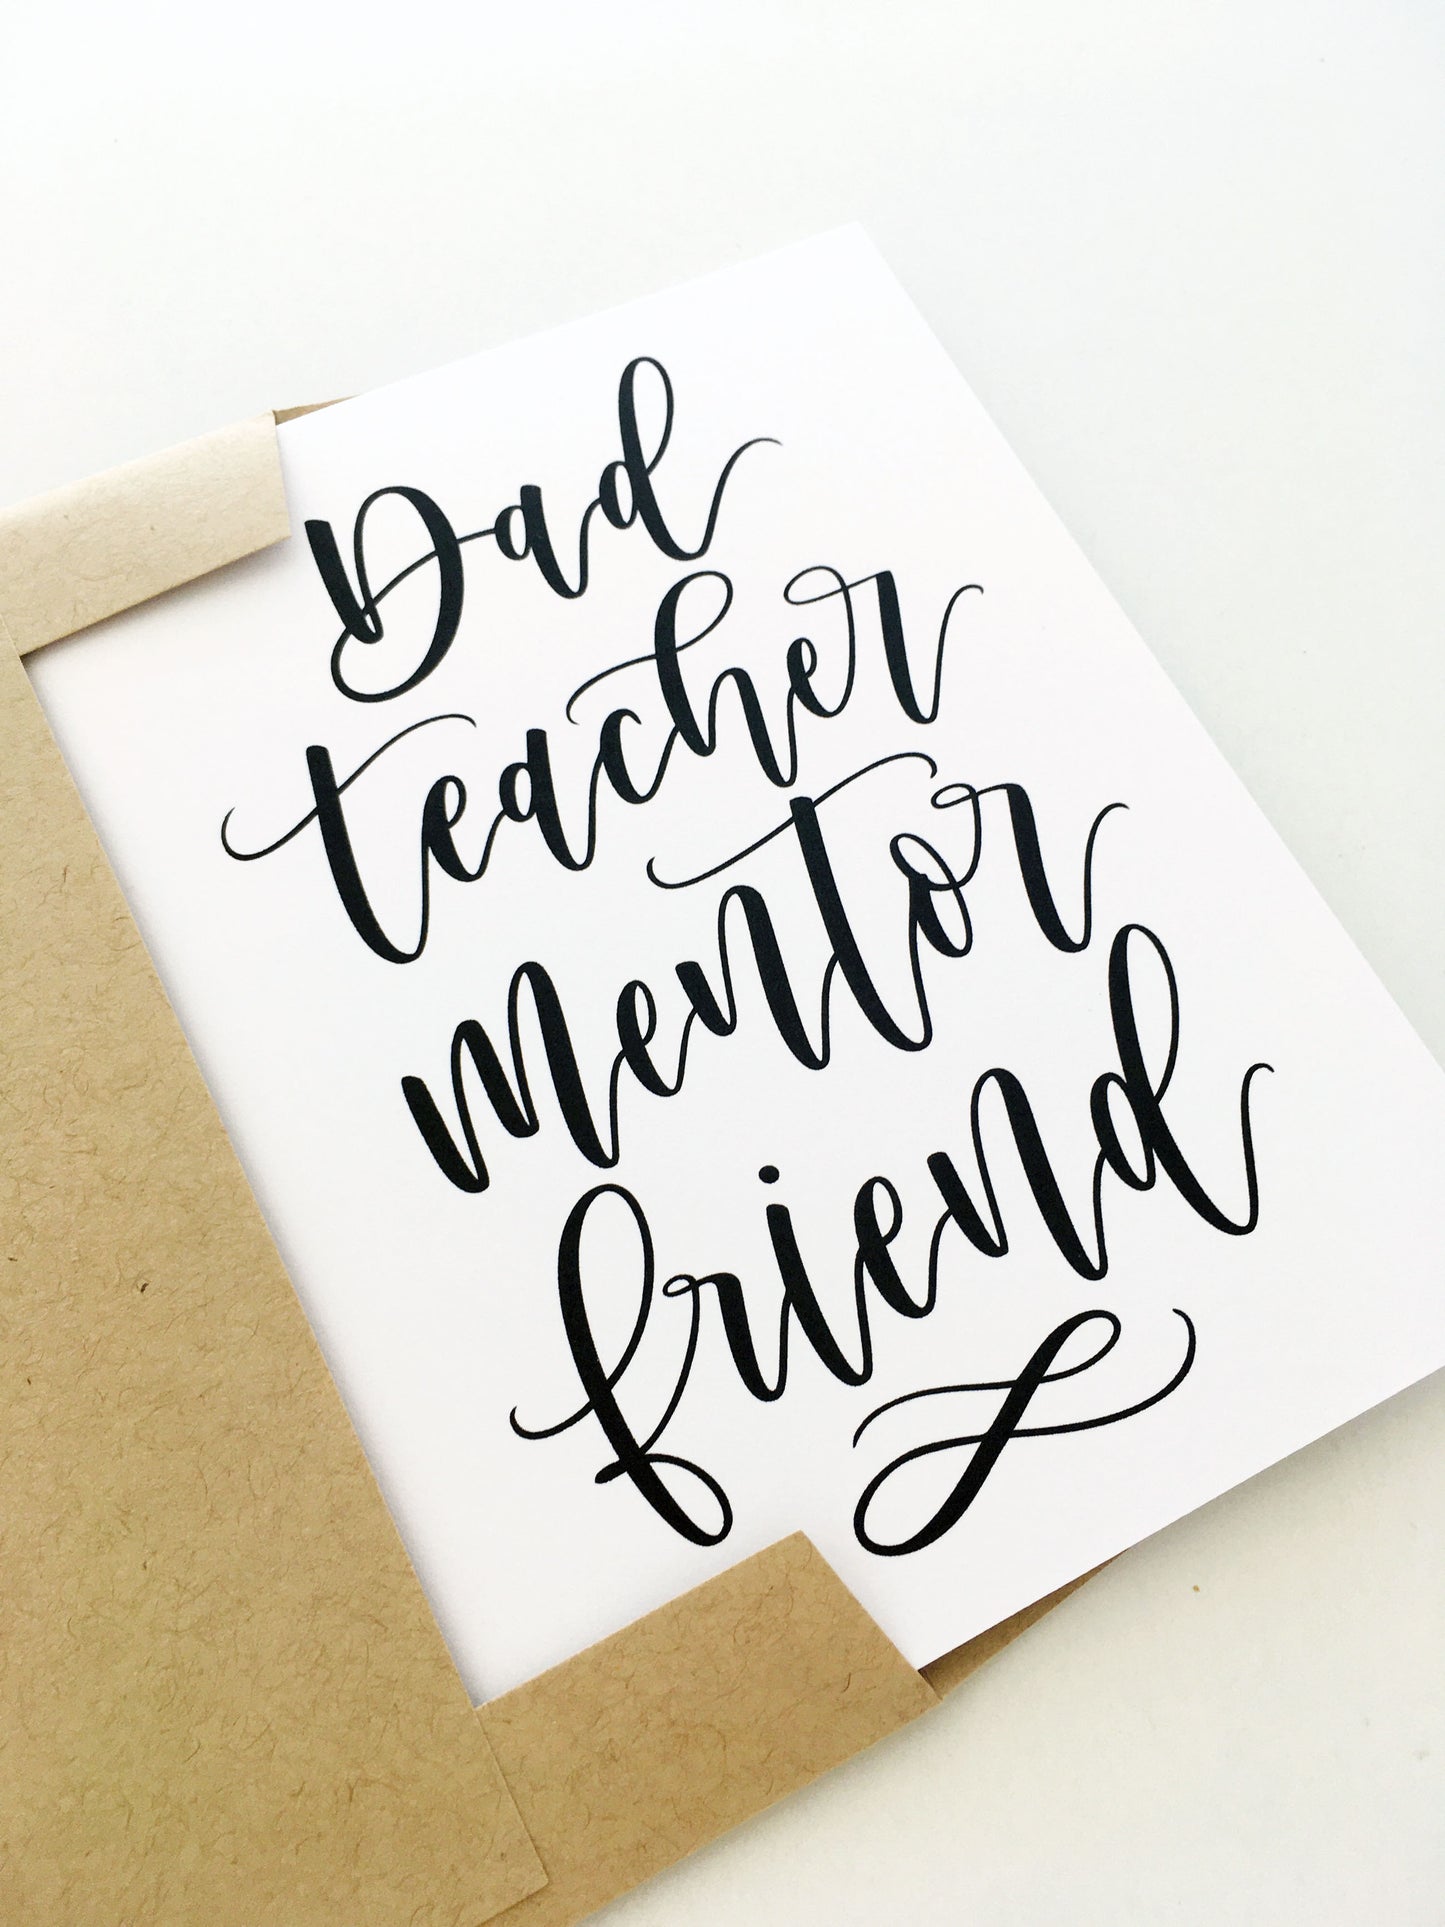 Dad Teacher Mentor Friend Card